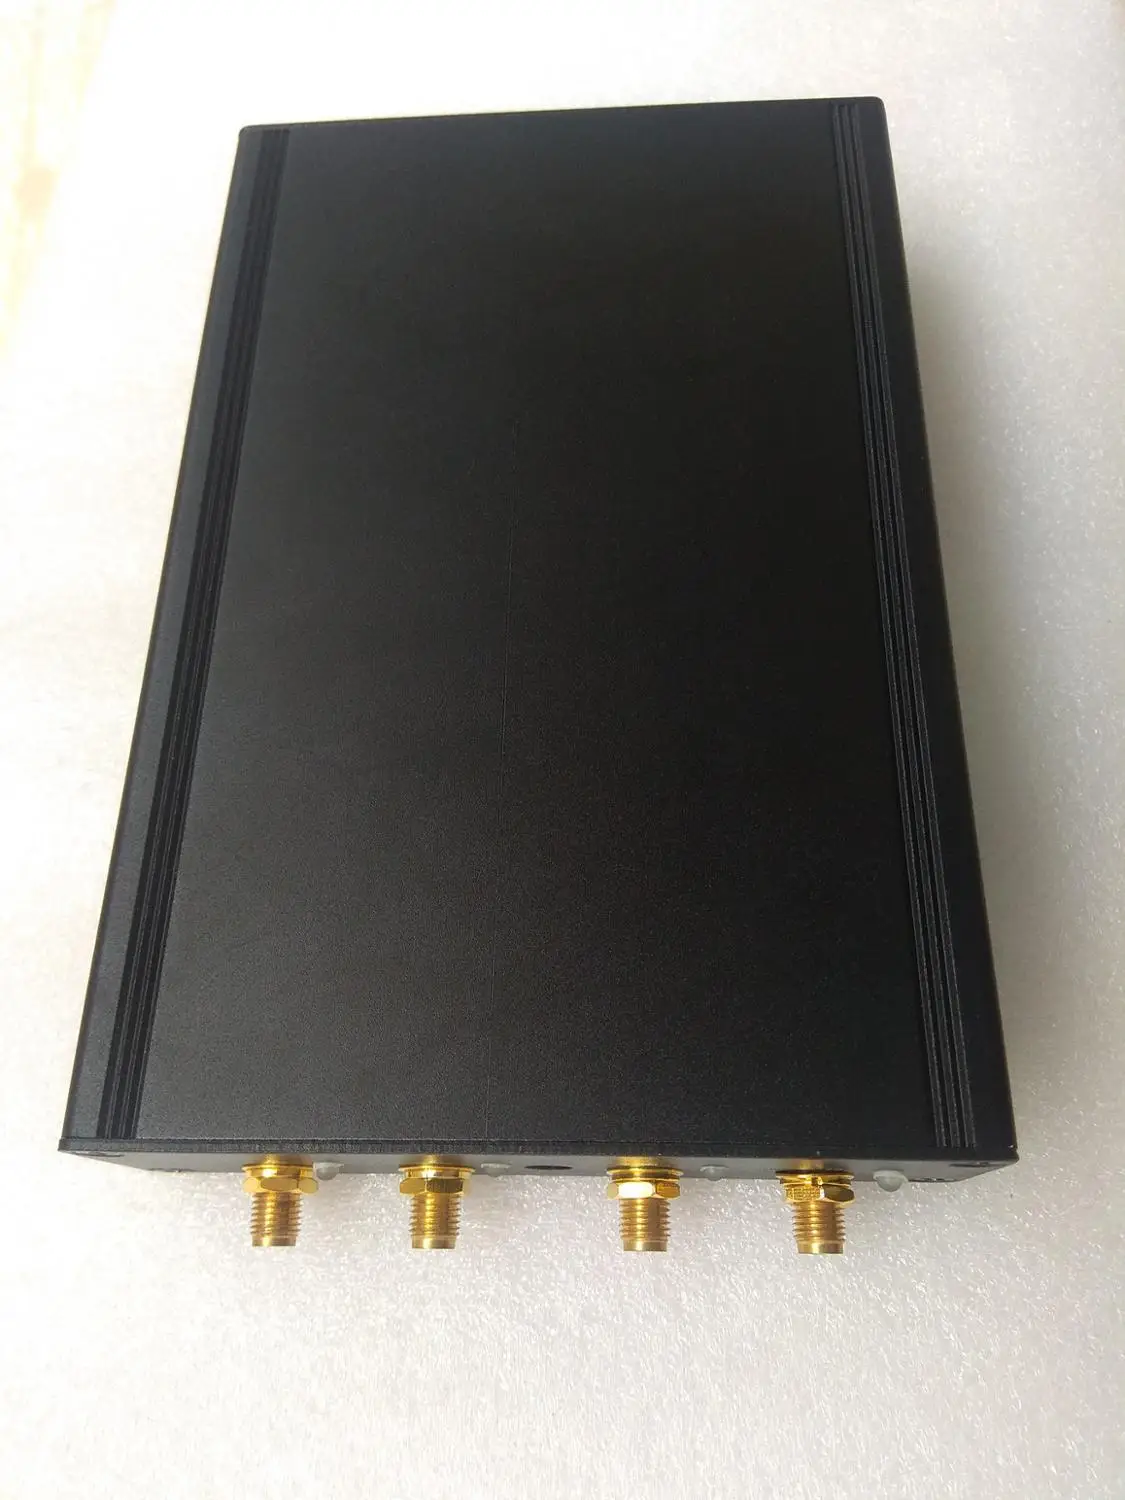 GNURadio AD9361 RF 70 МГц-6 ГГц SDR программное радио USB3.0 Совместимо с ETTUS USRP B210 полный дуплексный SDR